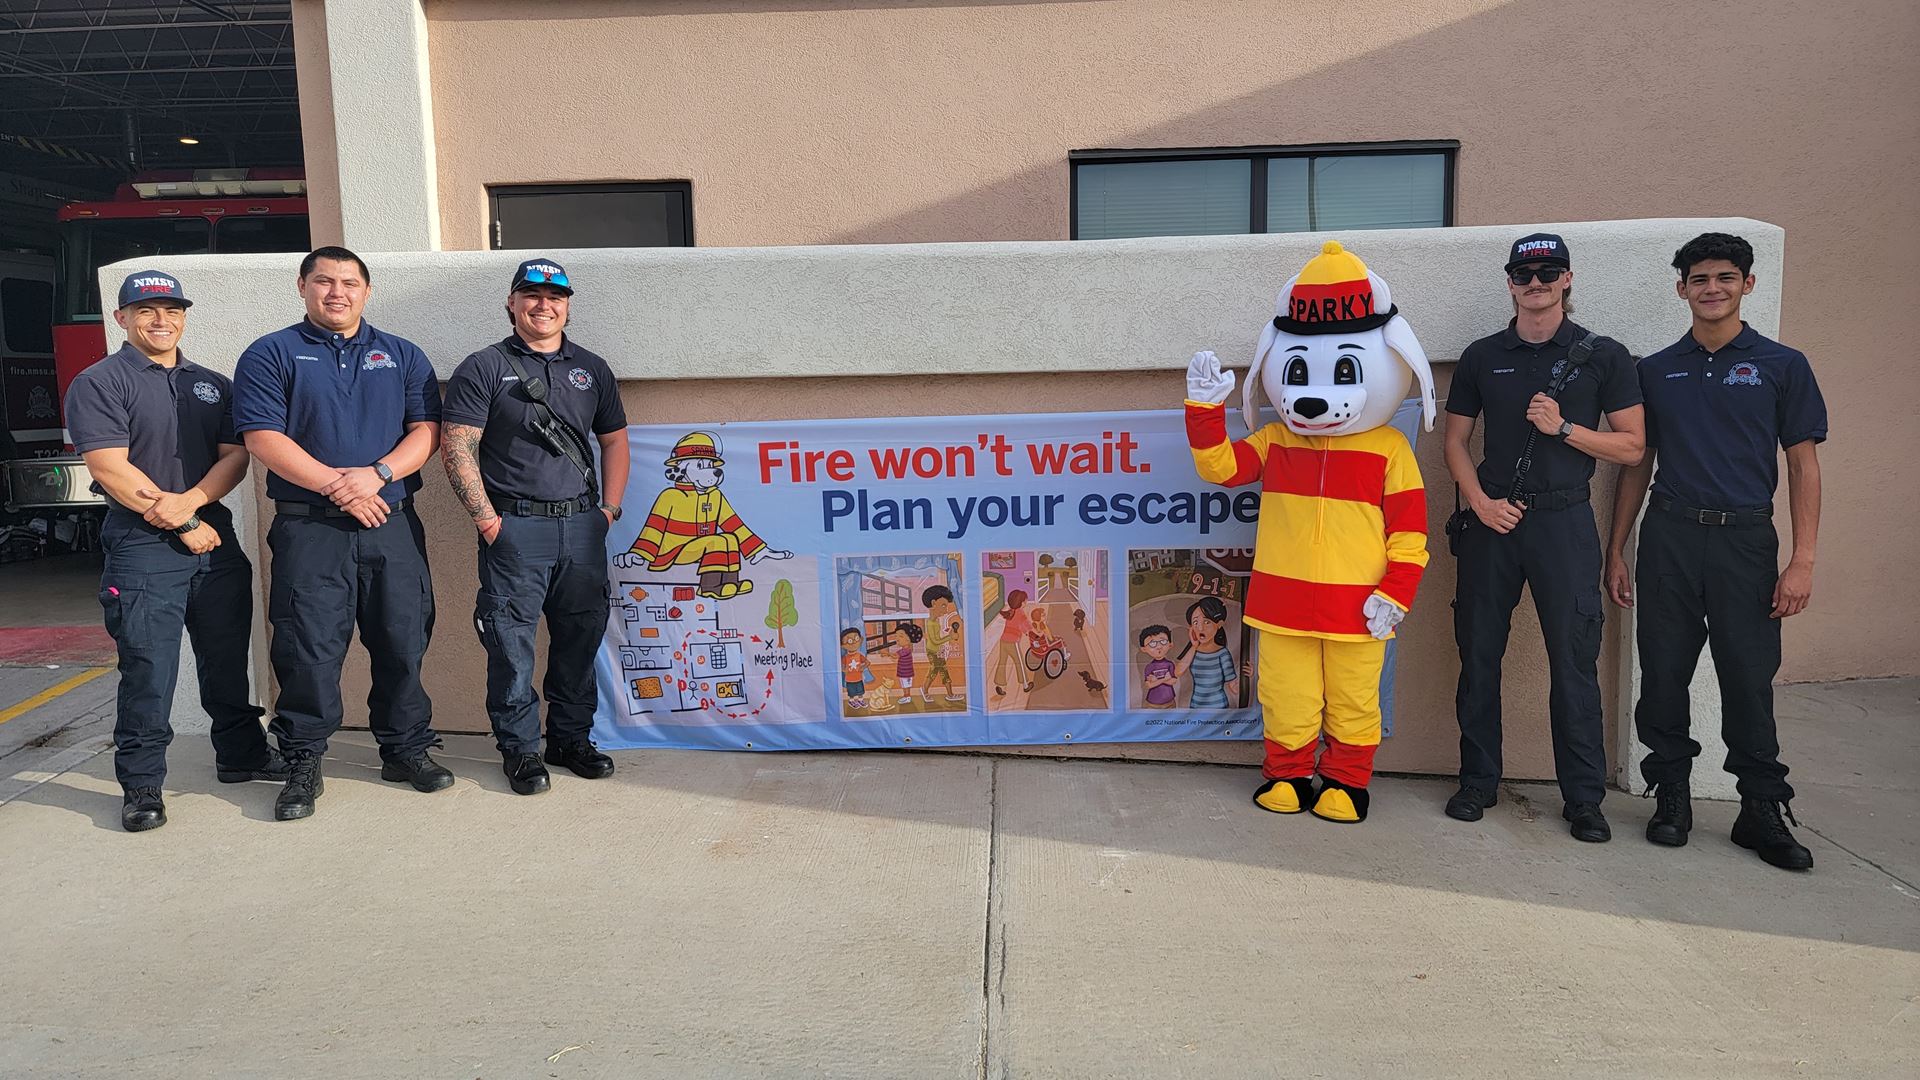 Fire Prevention Week runs from Oct. 9-15